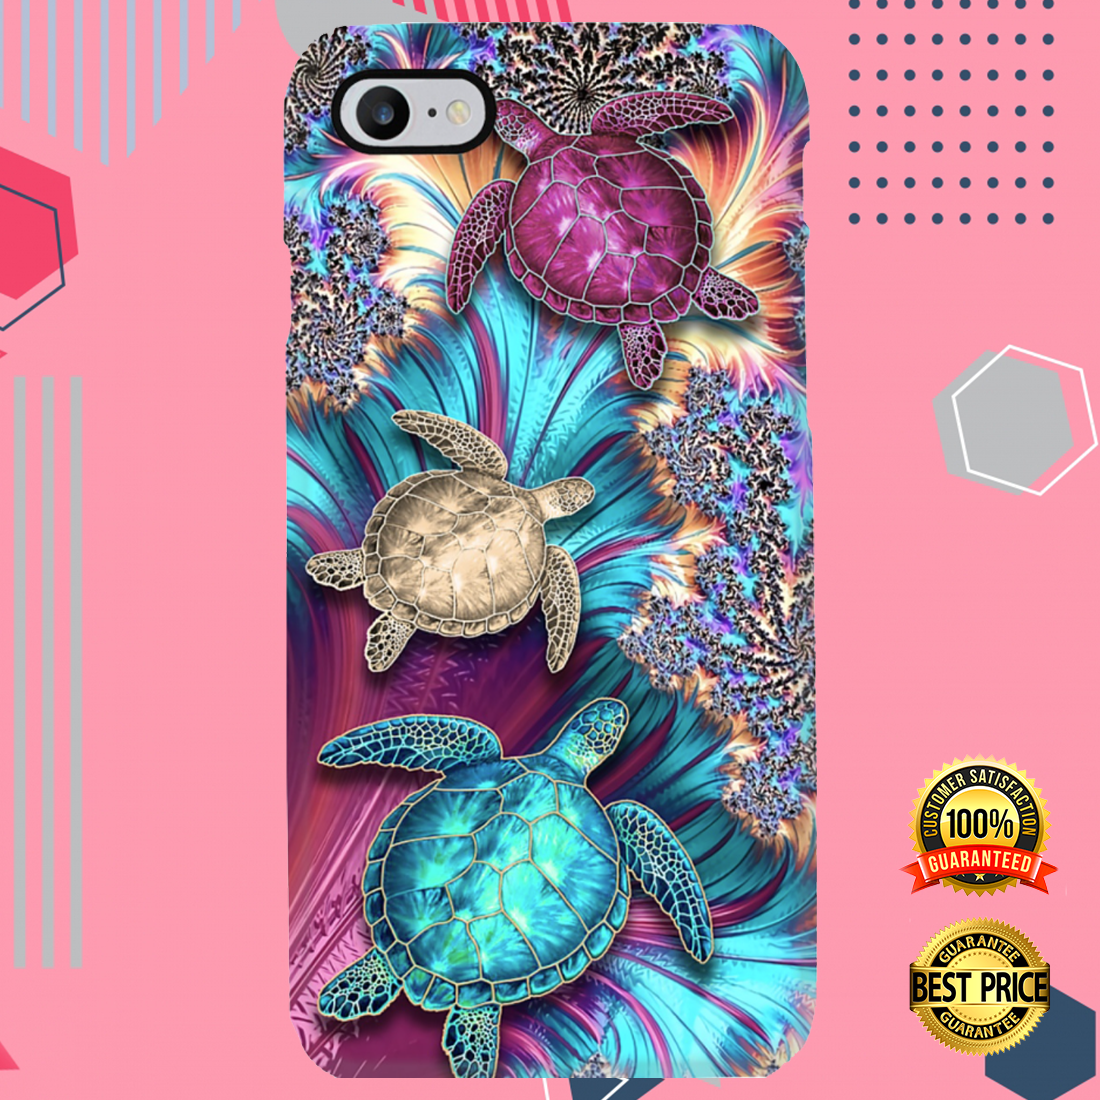 Magic Turtles phone case